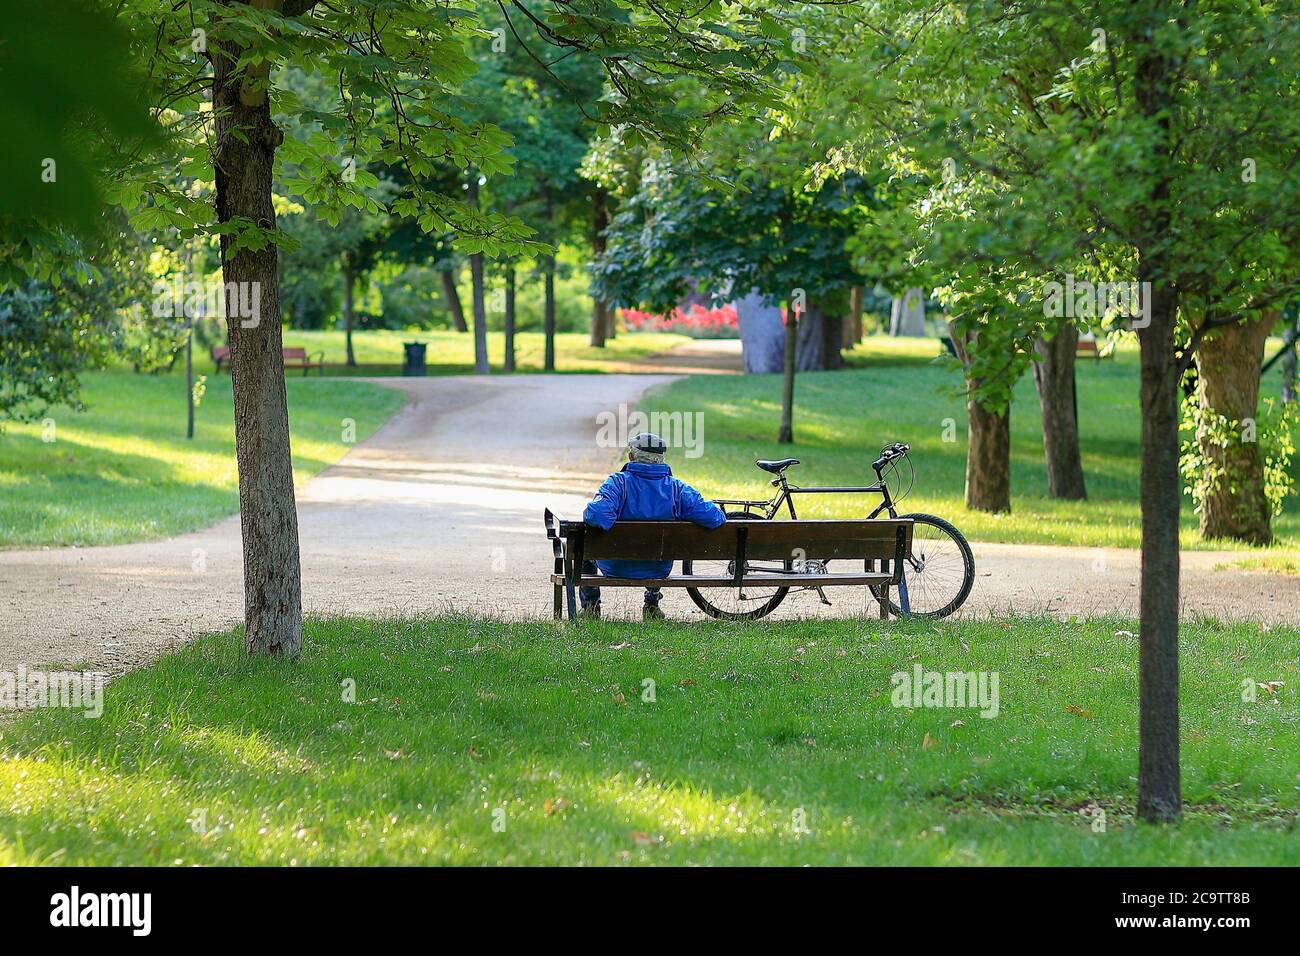 Madrid, Spagna - 31 maggio 2020: Anziano seduto su una panchina accanto alla sua bicicletta in un parco a Madrid. Foto Stock